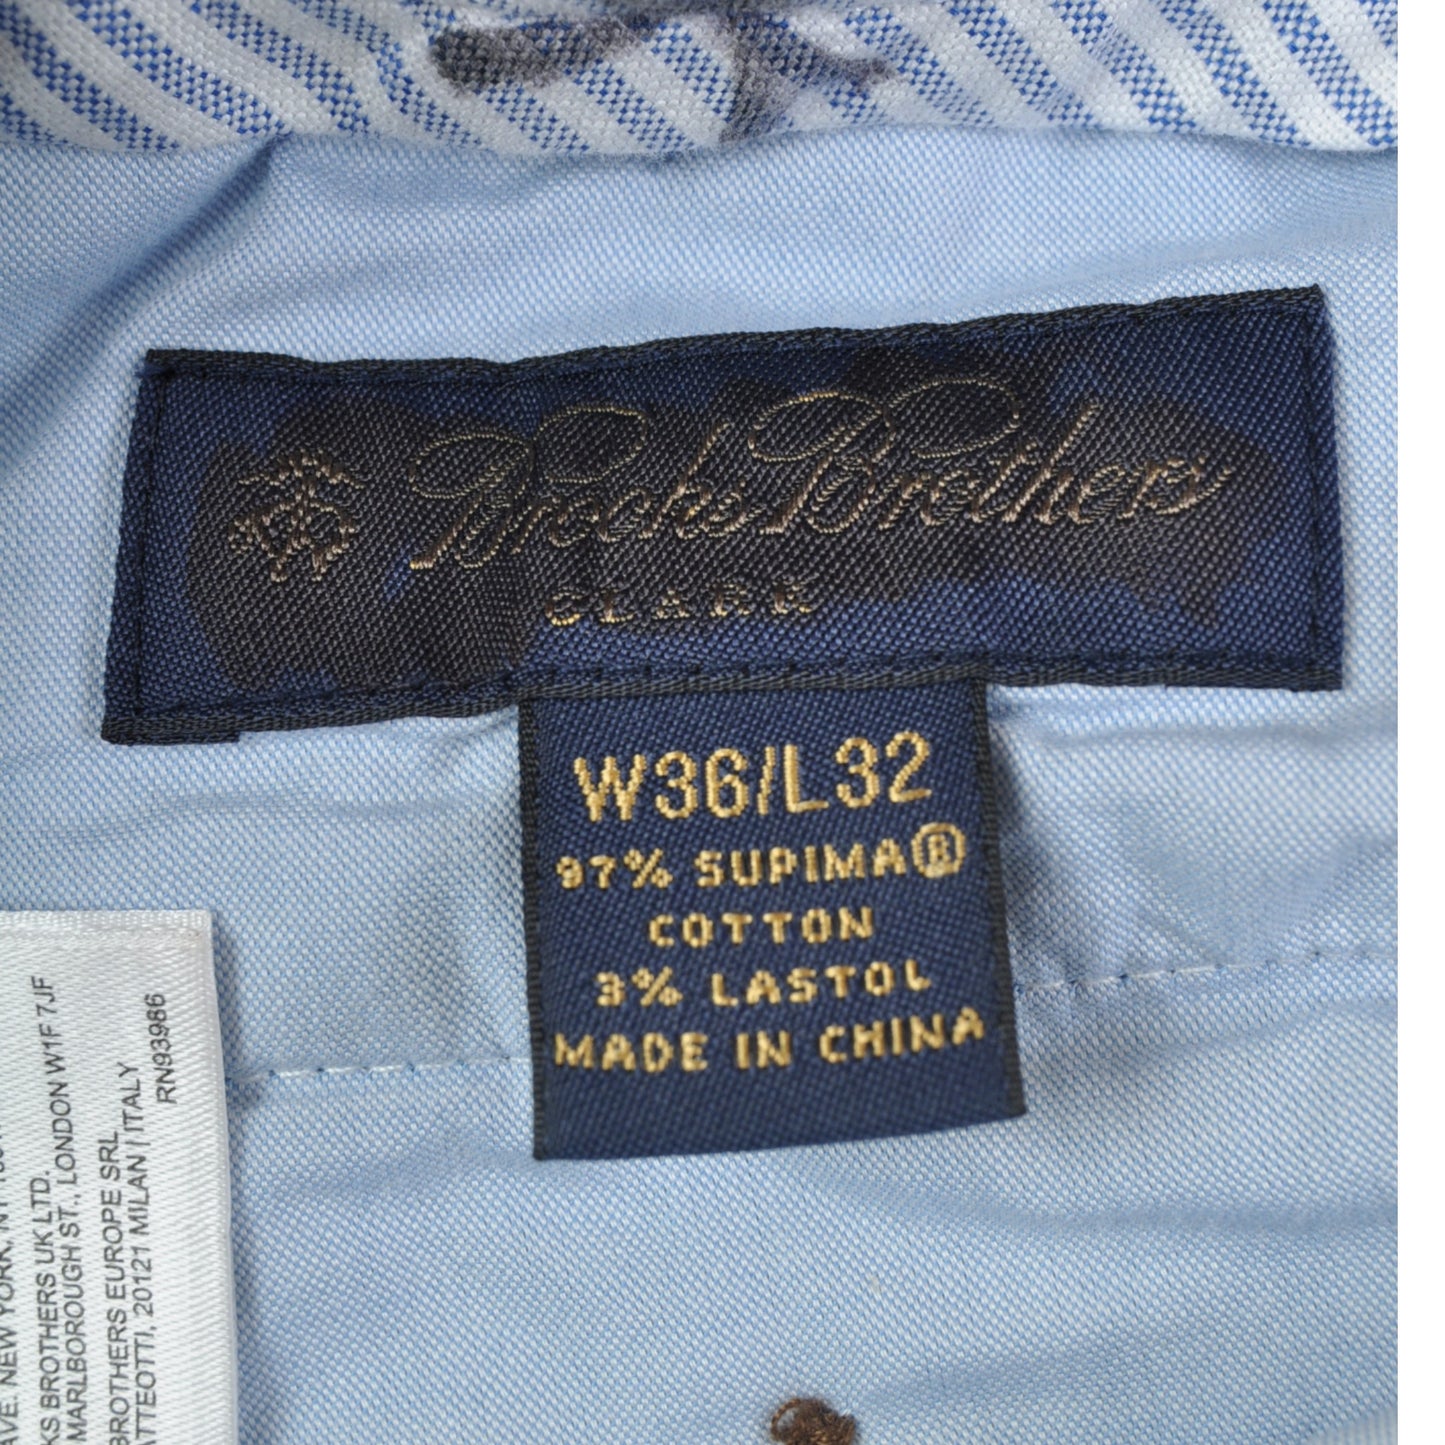 Vintage Chino Cotton Pants Navy W36 L32